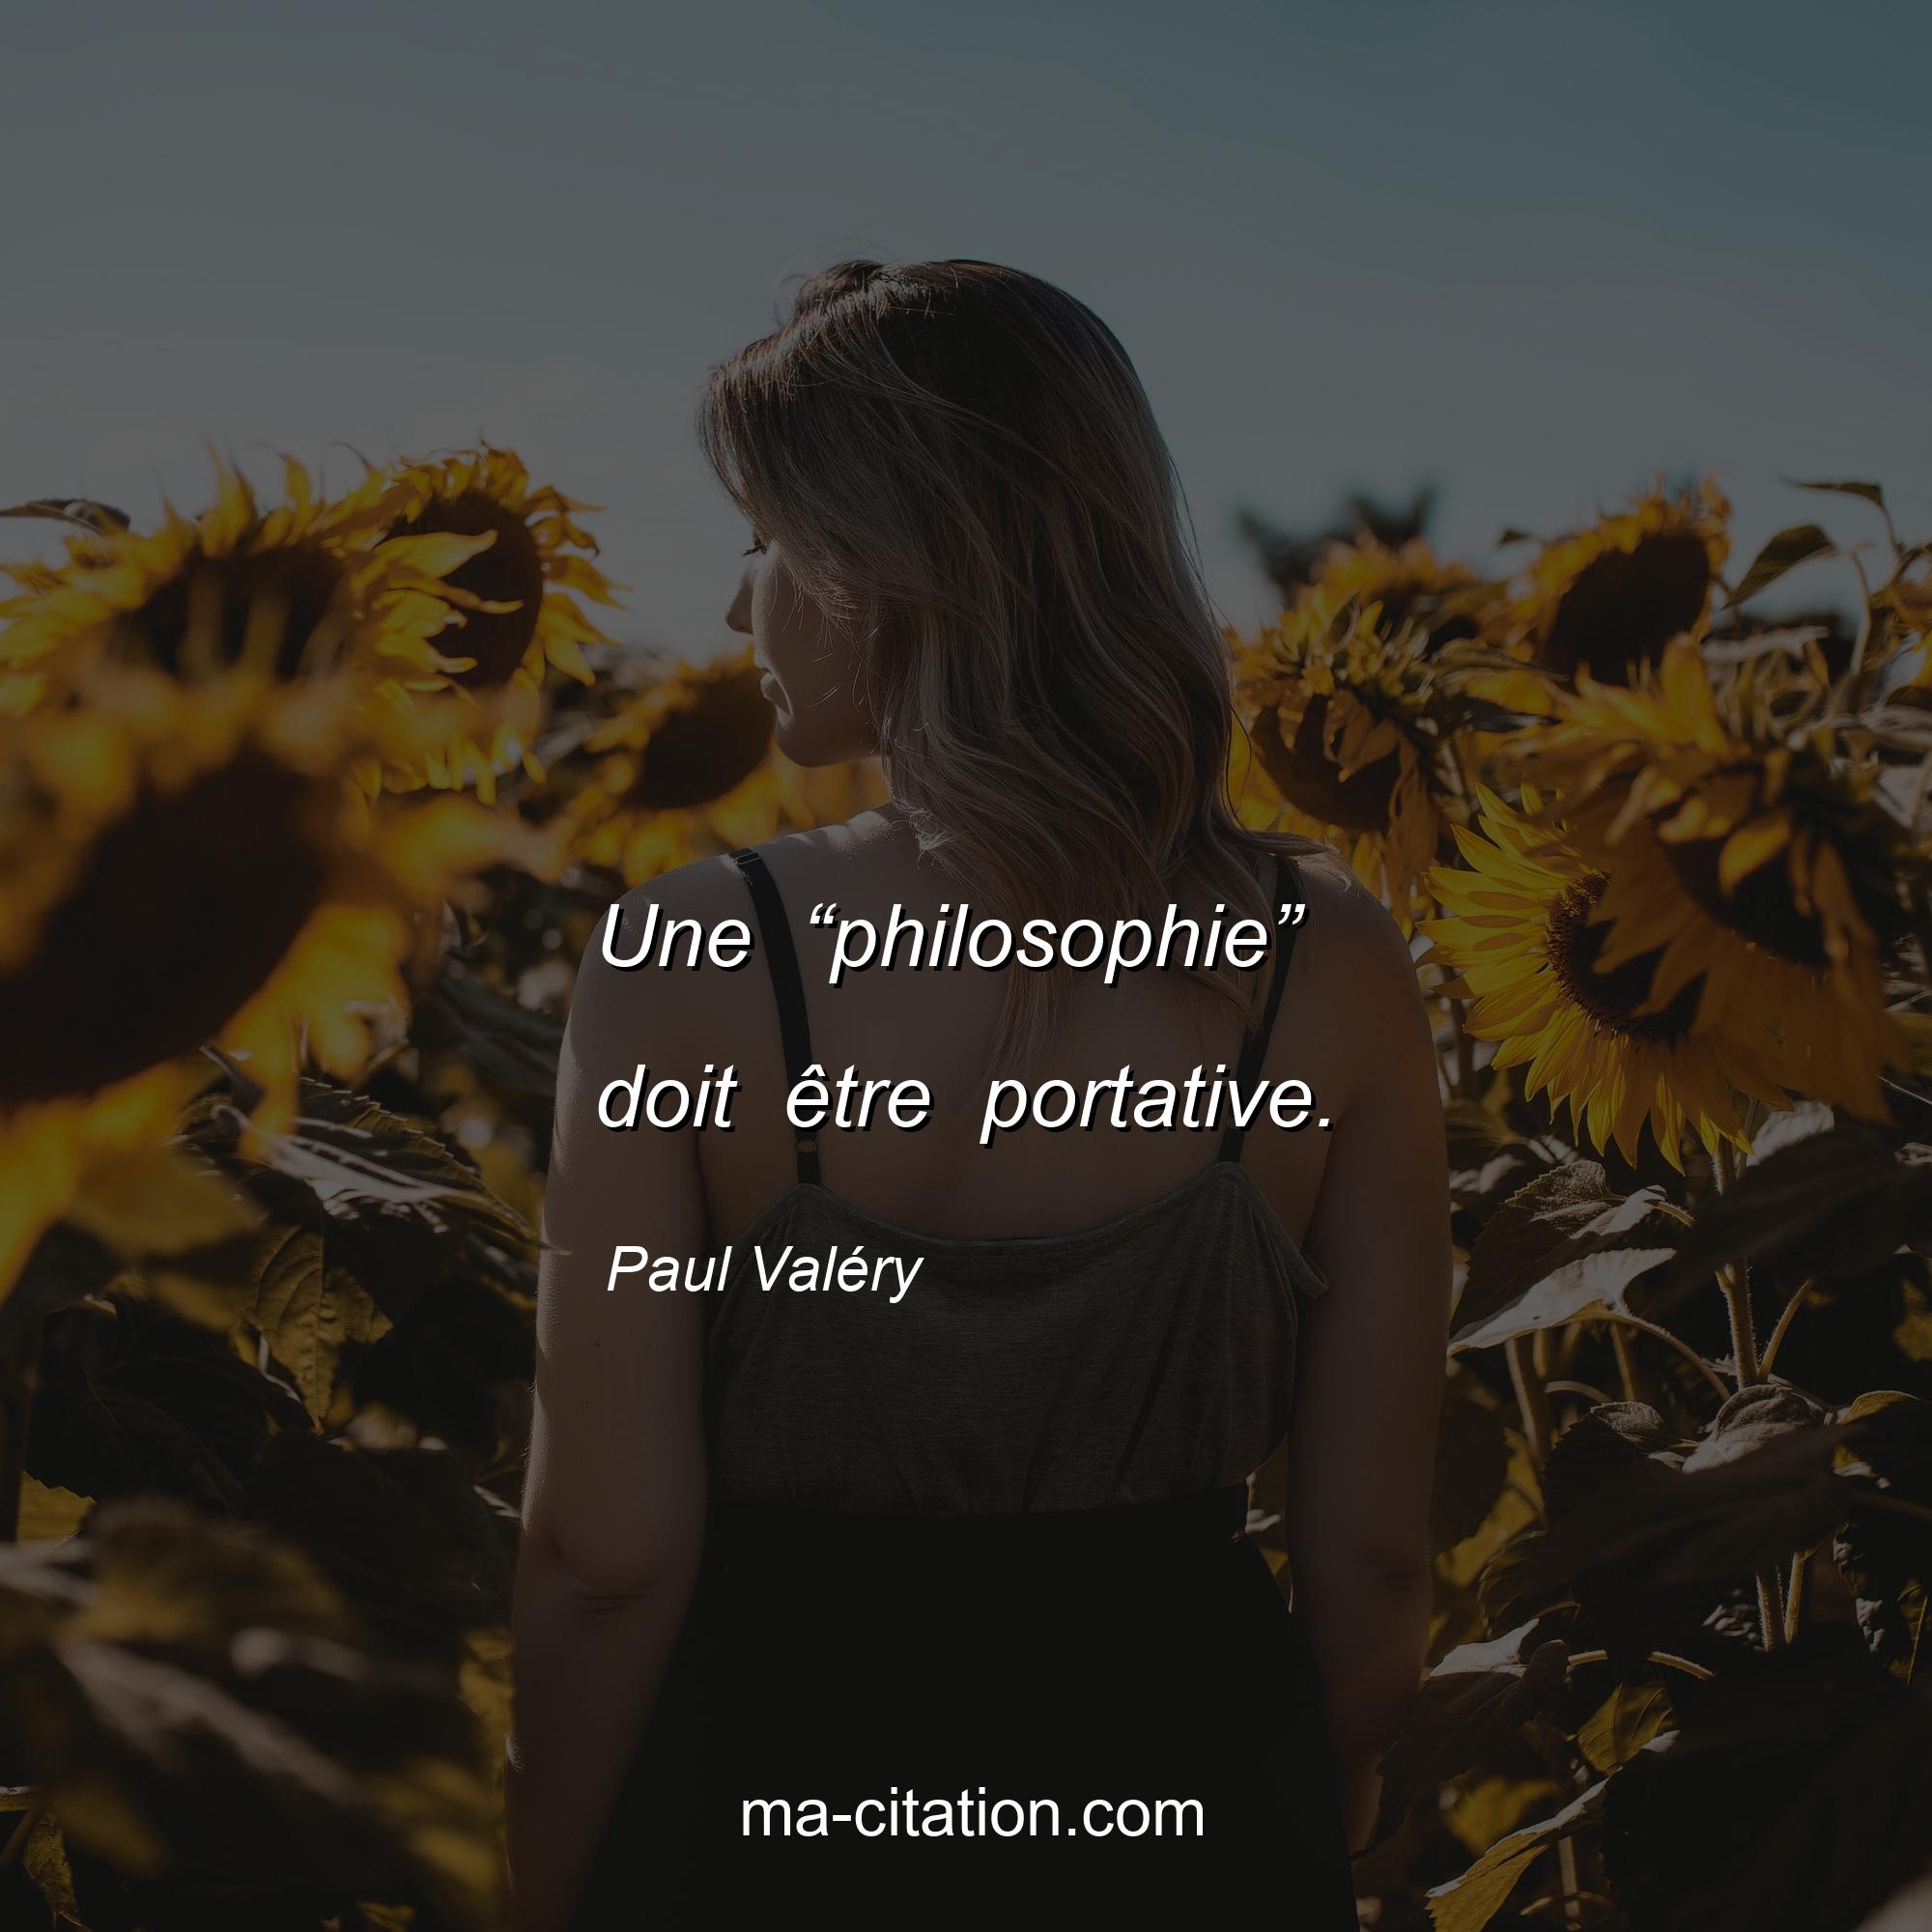 Paul Valéry : Une “philosophie” doit être portative.